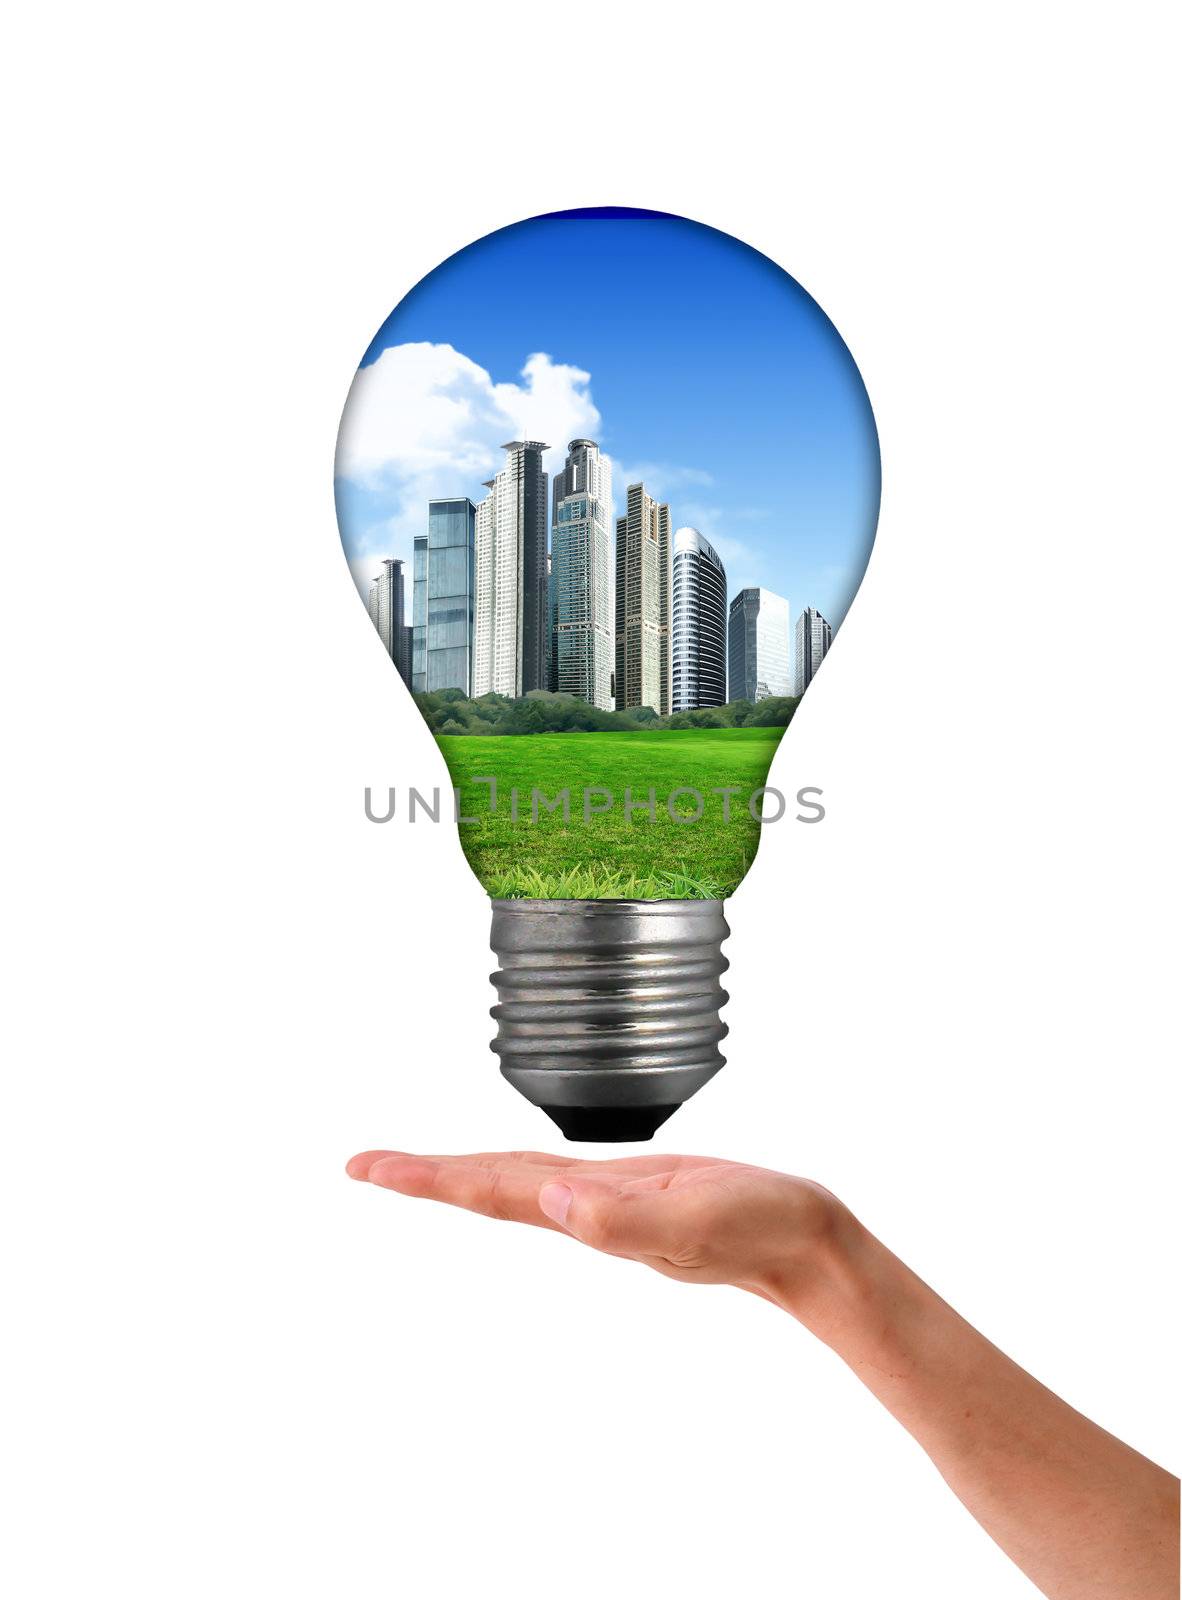 Clean energy, a light bulb